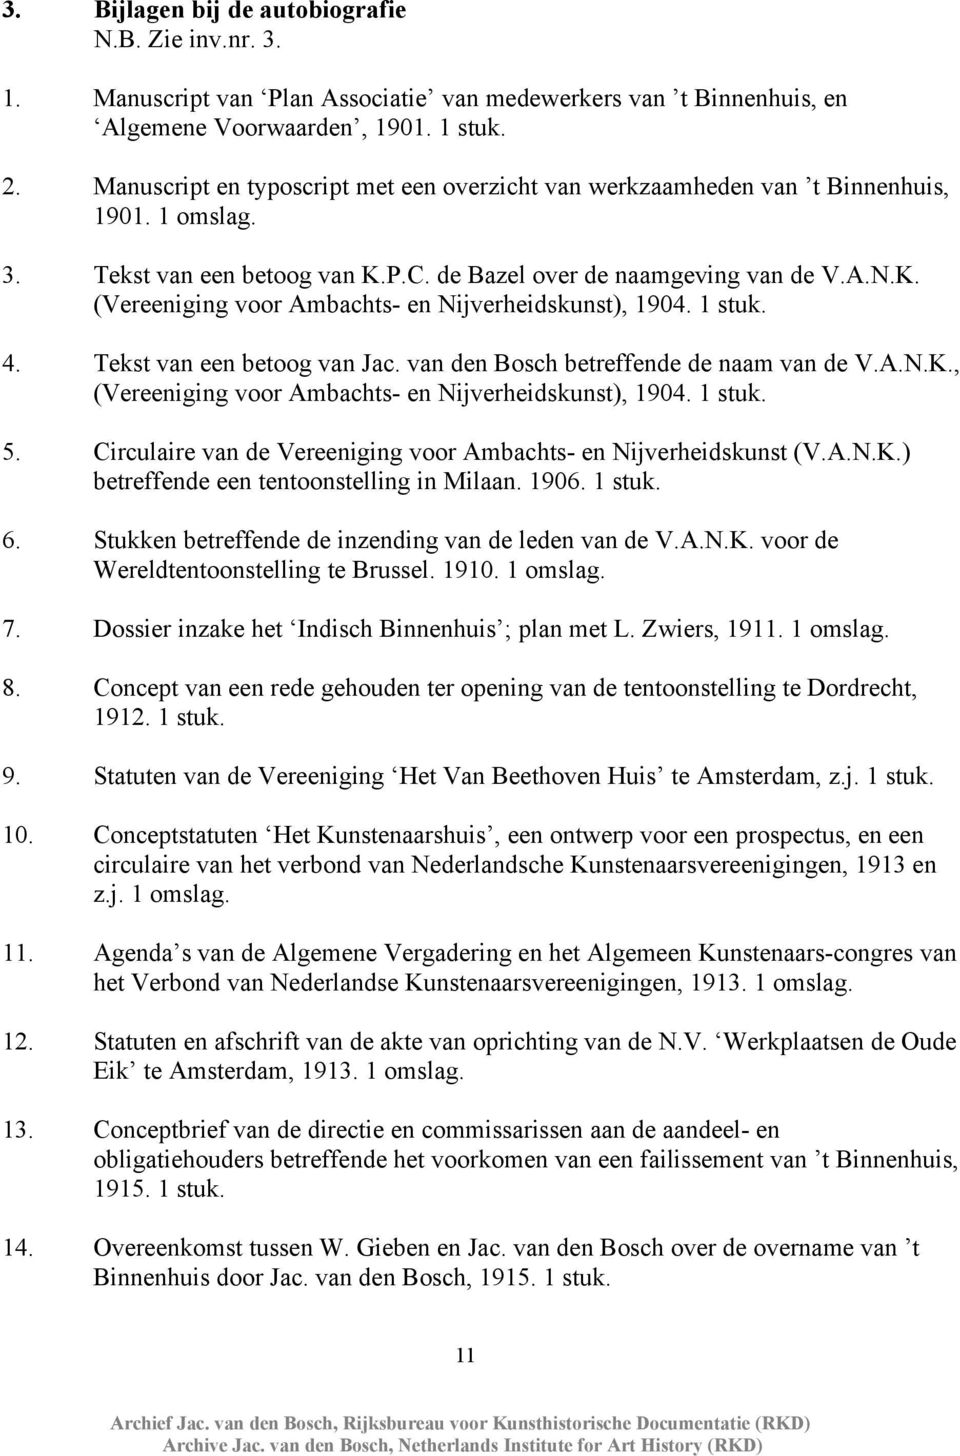 1 stuk. 4. Tekst van een betoog van Jac. van den Bosch betreffende de naam van de V.A.N.K., (Vereeniging voor Ambachts- en Nijverheidskunst), 1904. 1 stuk. 5.